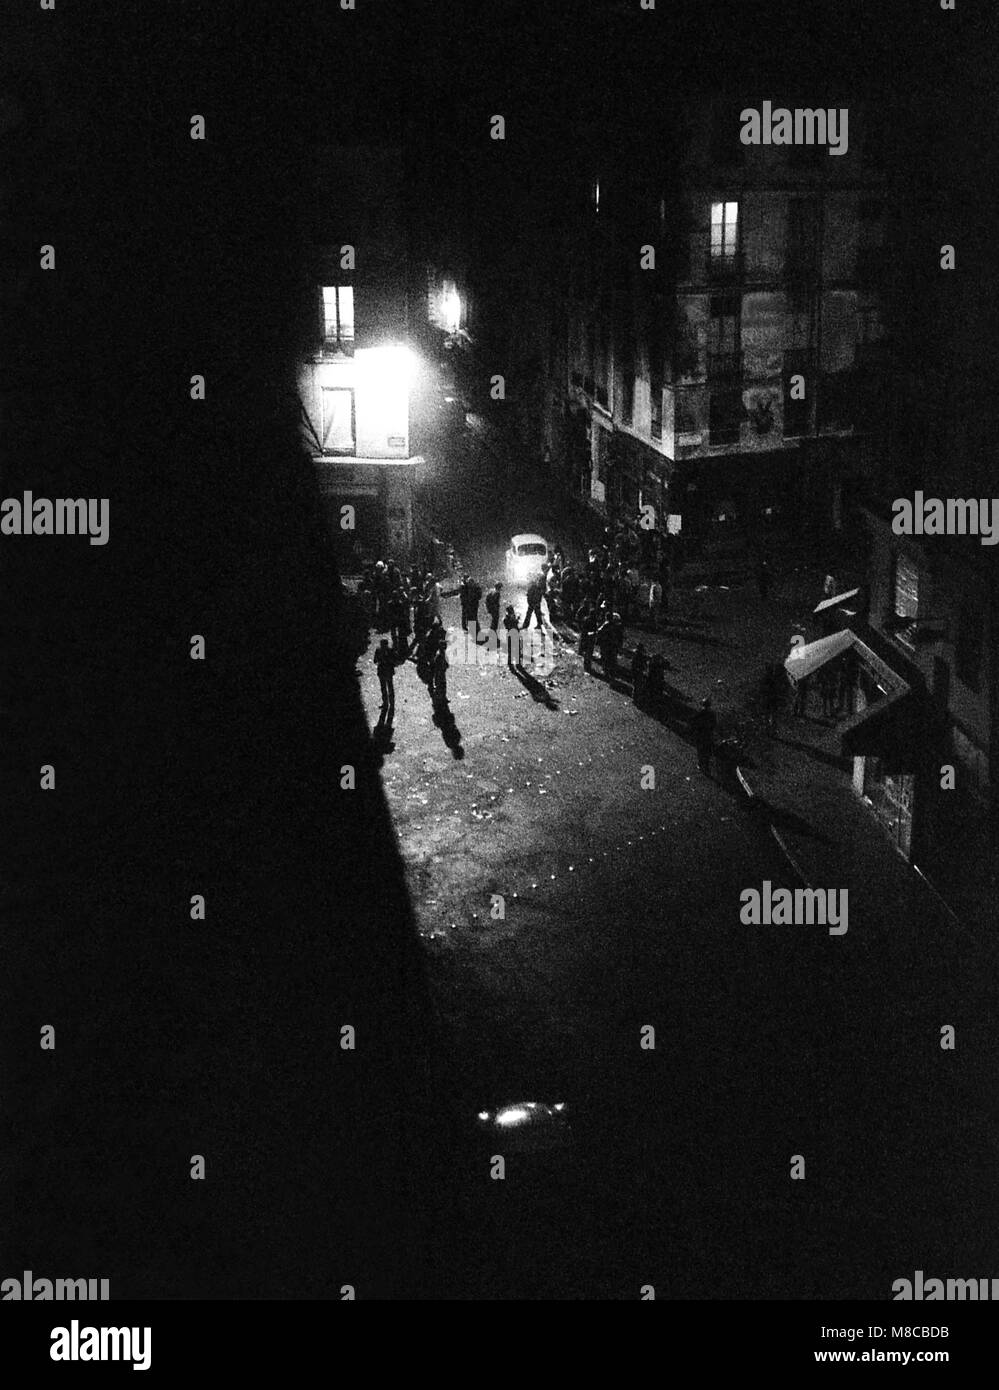 Philippe Gras / Le Pictorium - Maggio 68 - 1968 - Francia / Ile-de-France (Regione) / Parigi - raccolta di notte per le strade di Parigi Foto Stock